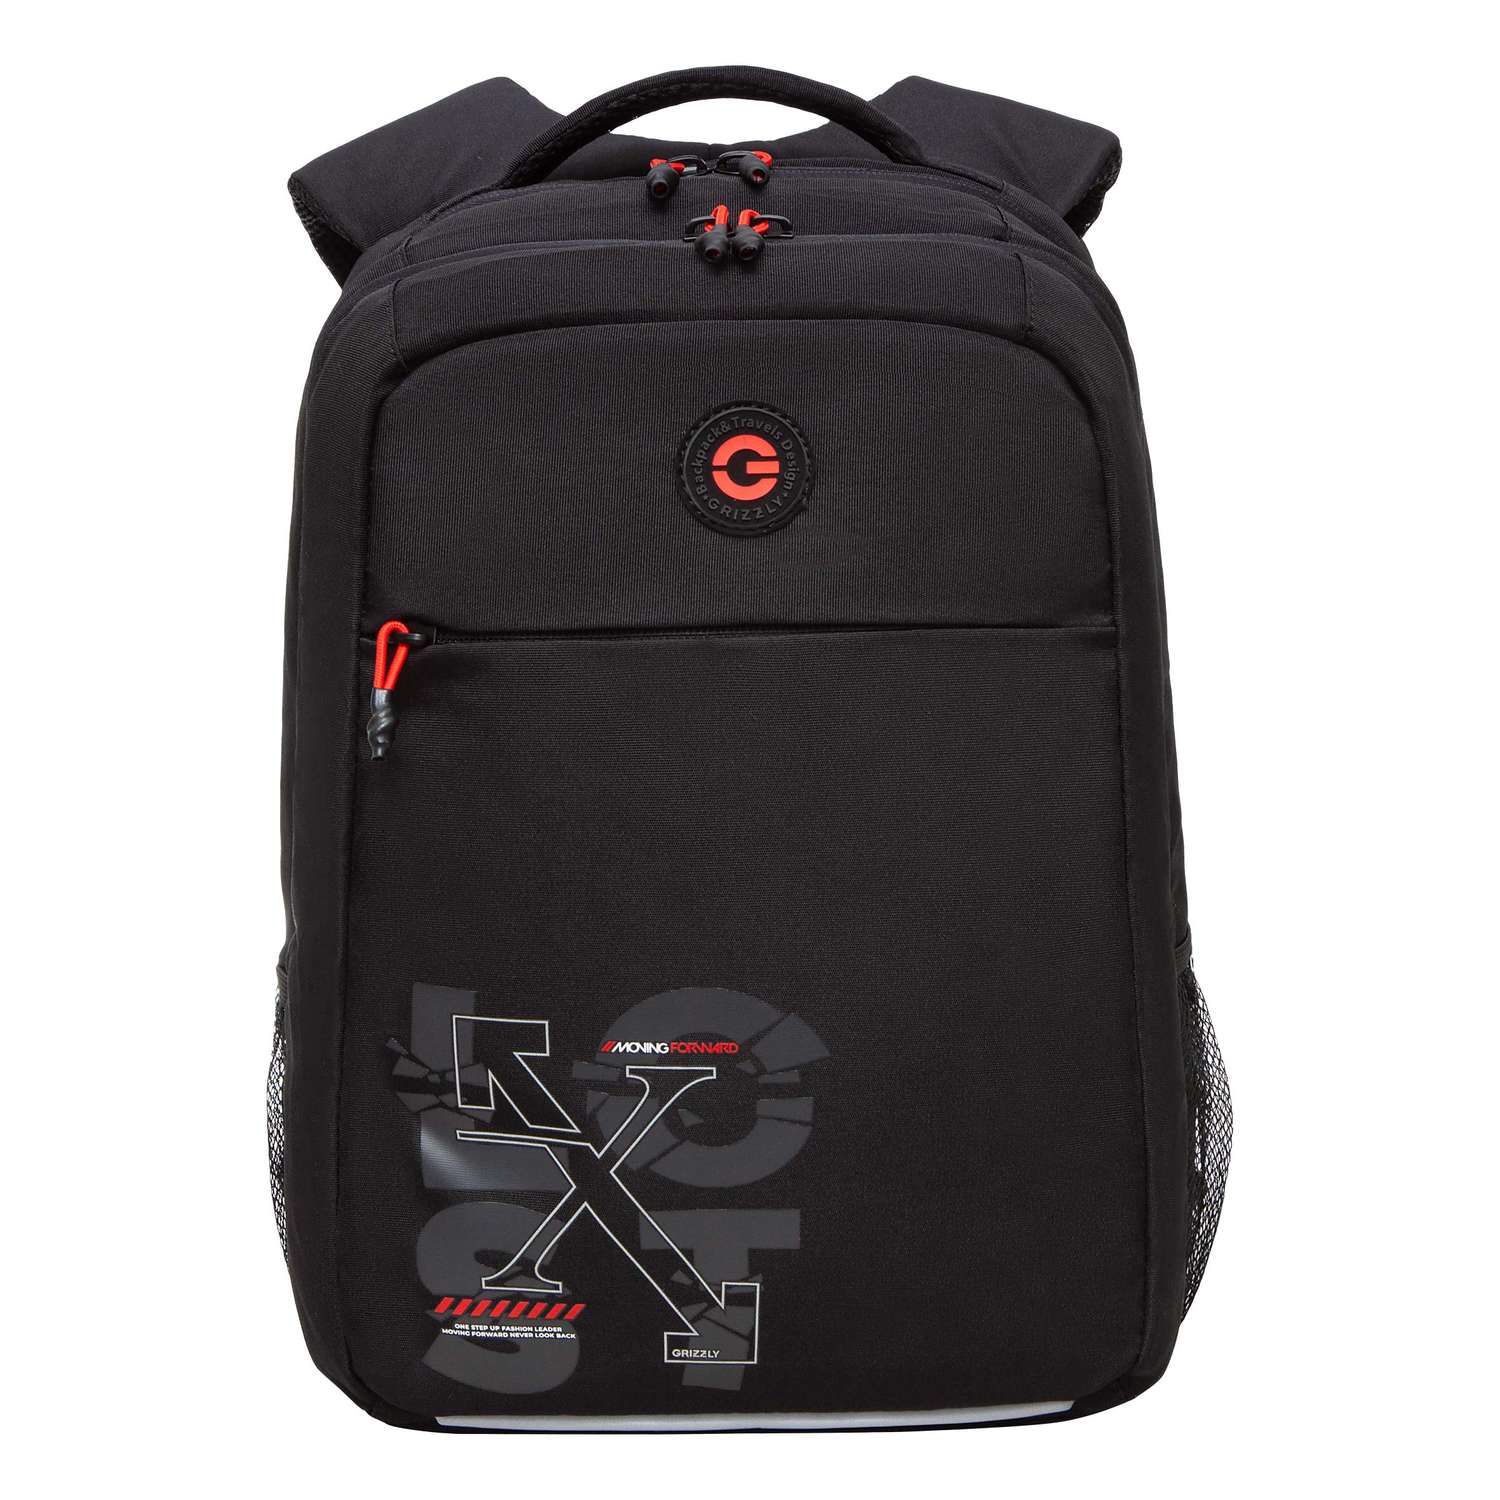 Рюкзак школьный Grizzly Черный-Красный RB-456-5/1 - фото 1